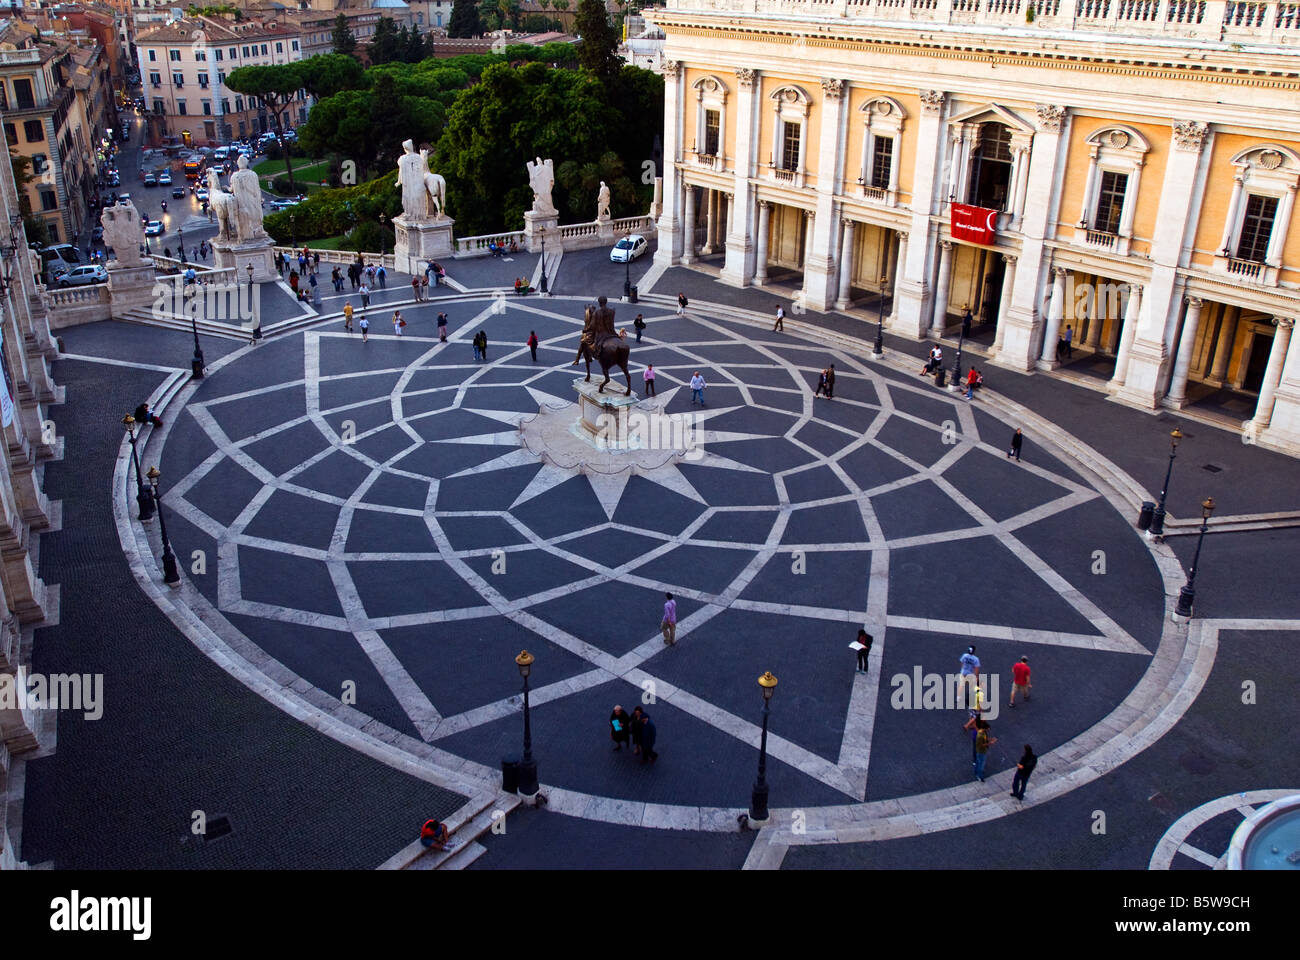 Piazza del Campidoglio in Rome Stock Photo